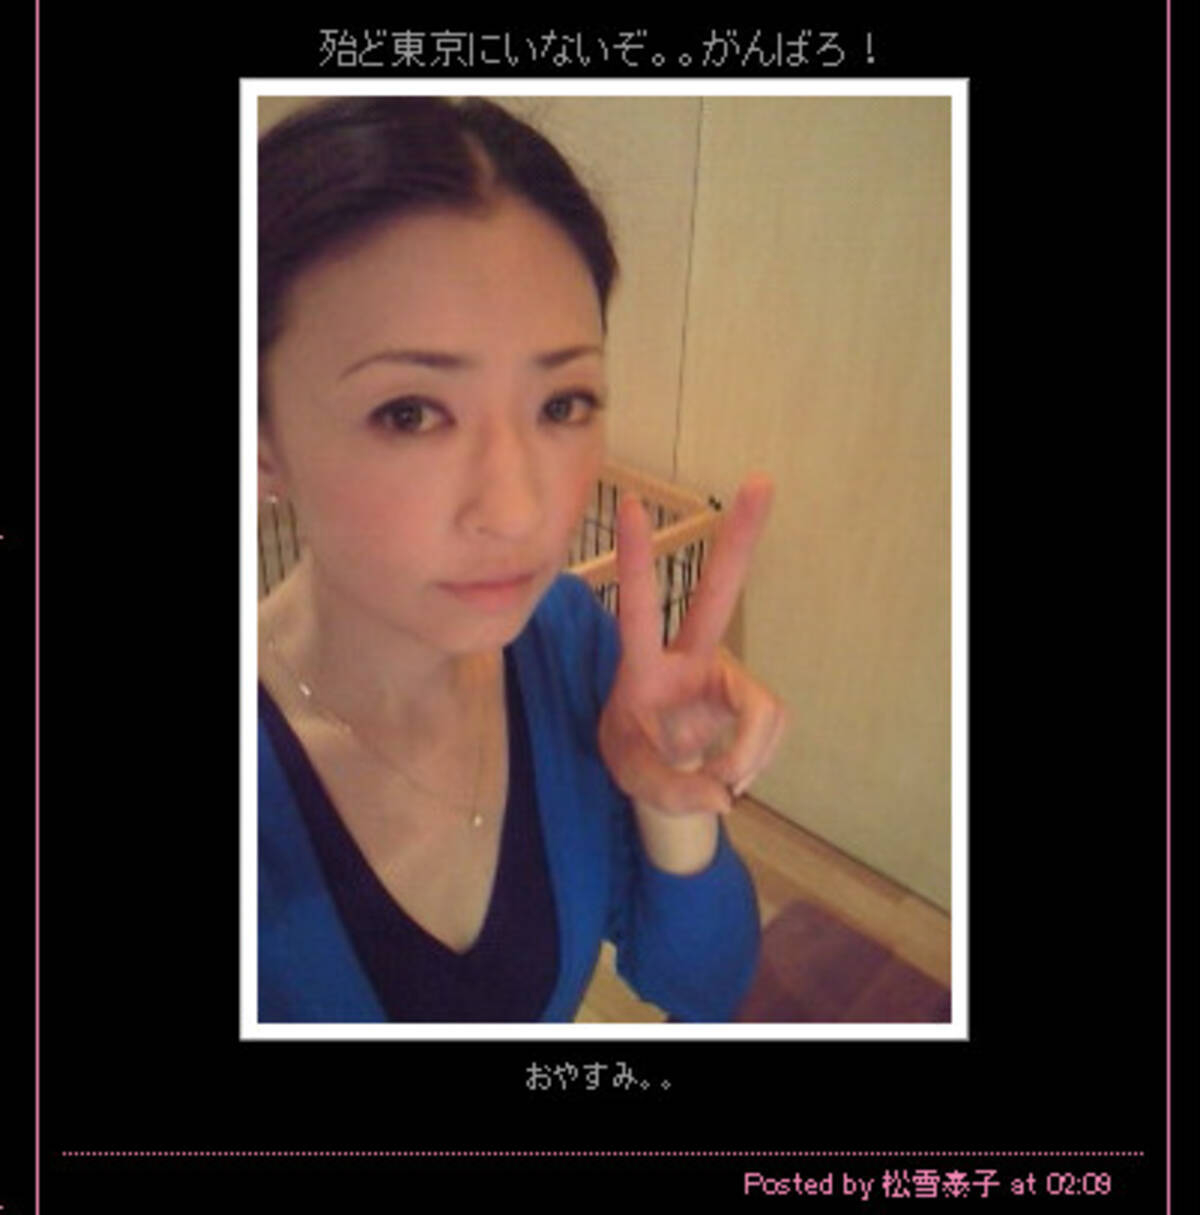 エロス に挑戦した松雪泰子さん 39歳 が美しすぎて困る 2012年1月28日 エキサイトニュース